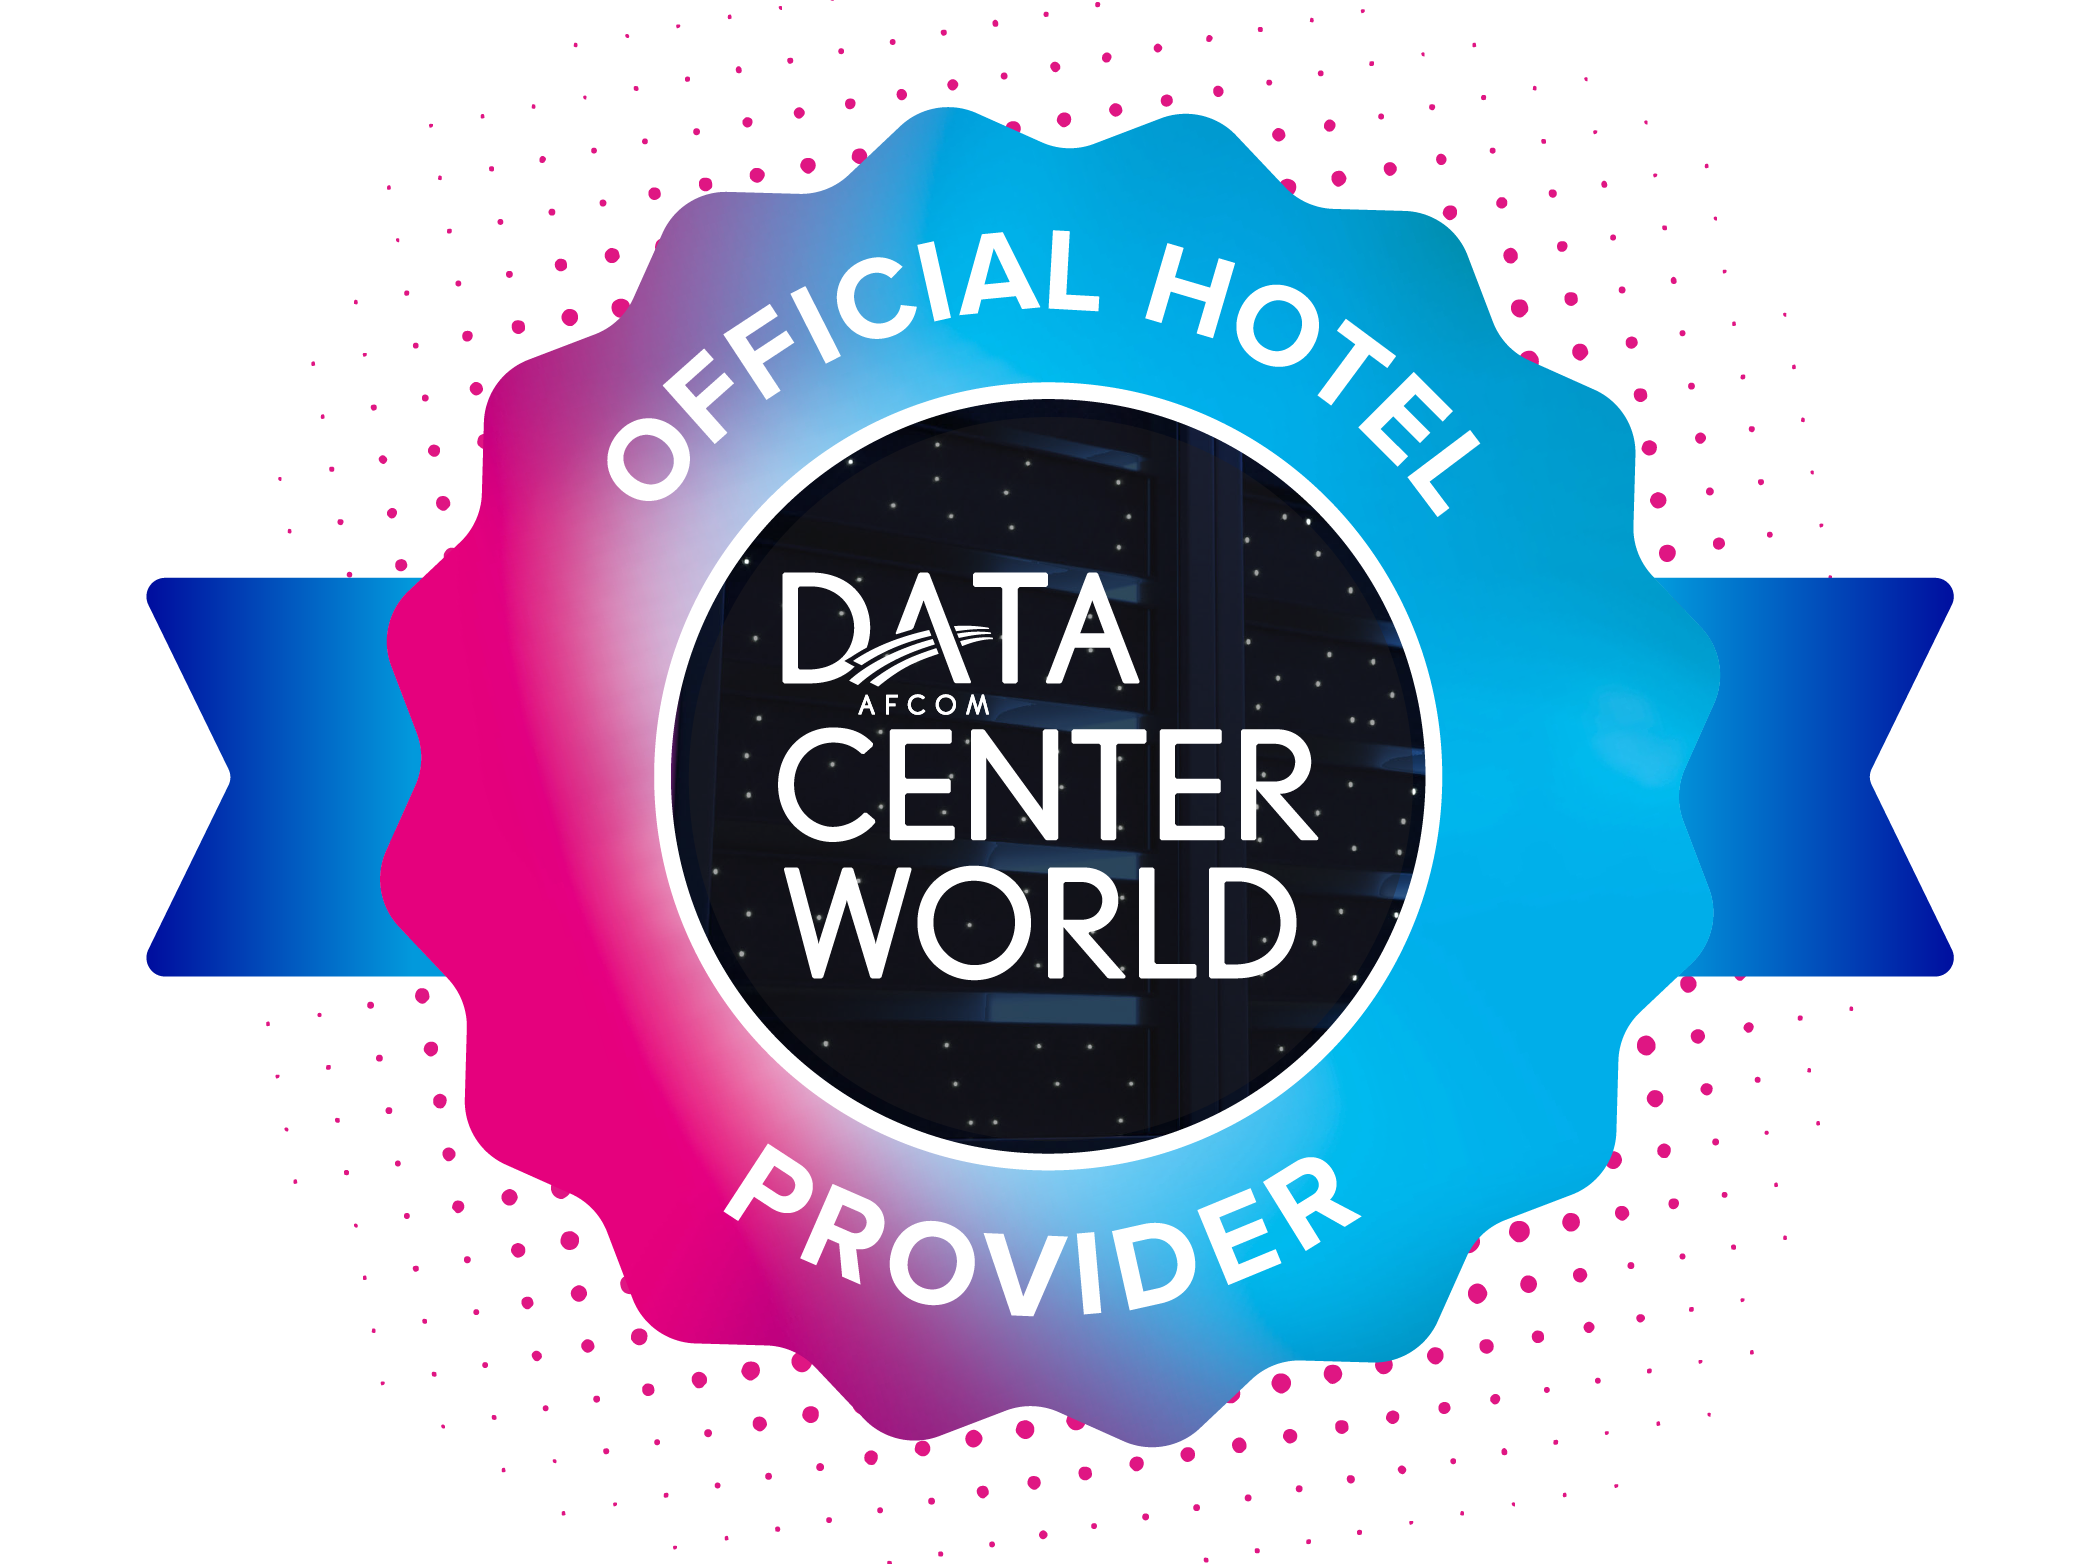 Data Center World Official Housing Partner